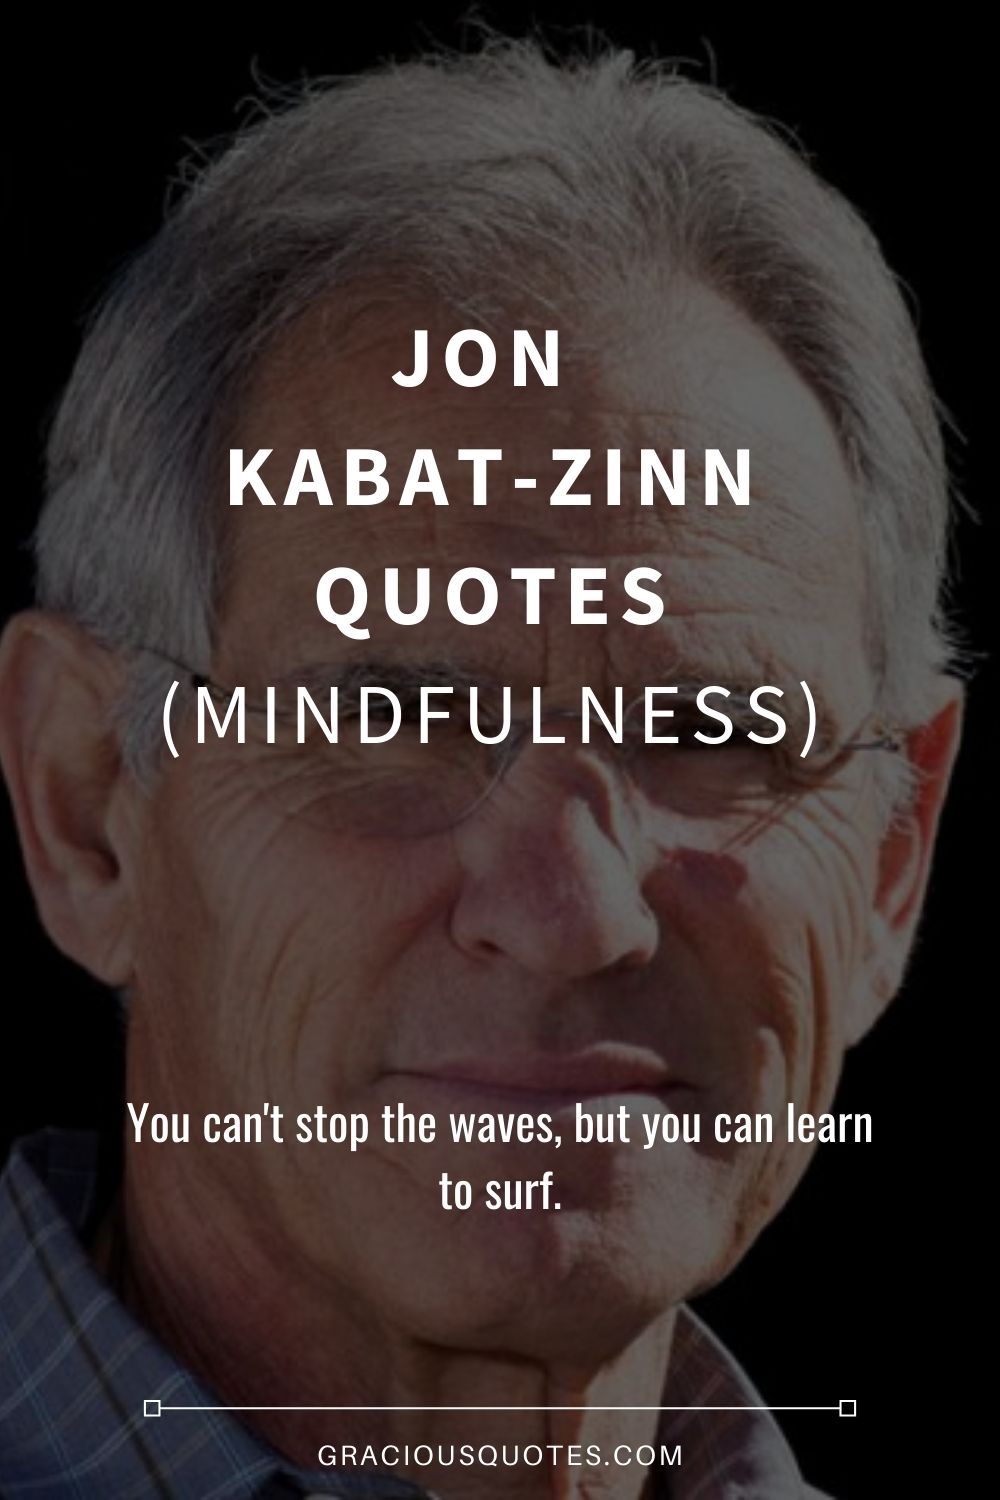 Jon Kabat-Zinn Quotes (MINDFULNESS) - Gracious Quotes